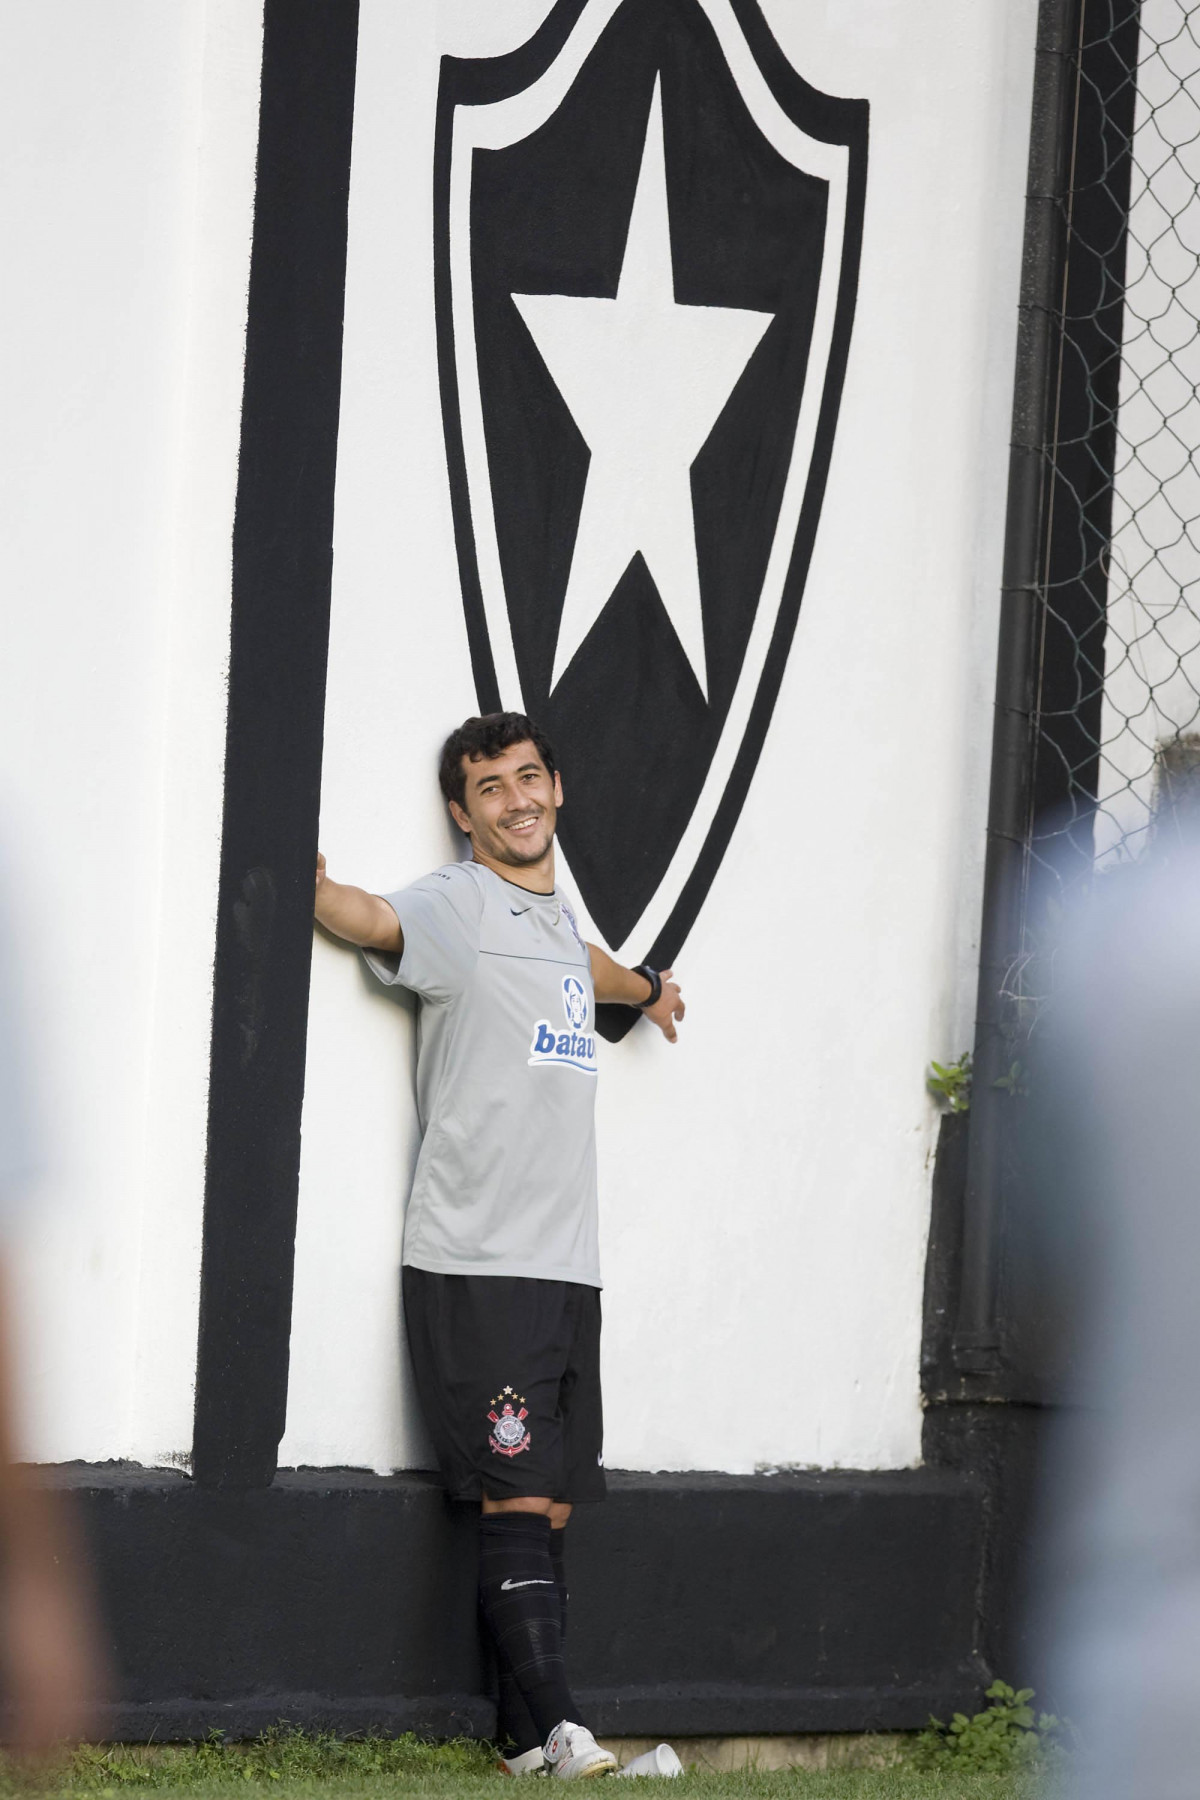 Durante o treino do Corinthians realizado na esta tarde em General Severiano, sede do Botafogo, no Rio de Janeiro. O prximo jogo ser contra o Fluminense no Maracan, amanh, quarta-feira, 20/05 a noite, no jogo de volta das quartas de final da Copa do Brasil 2009